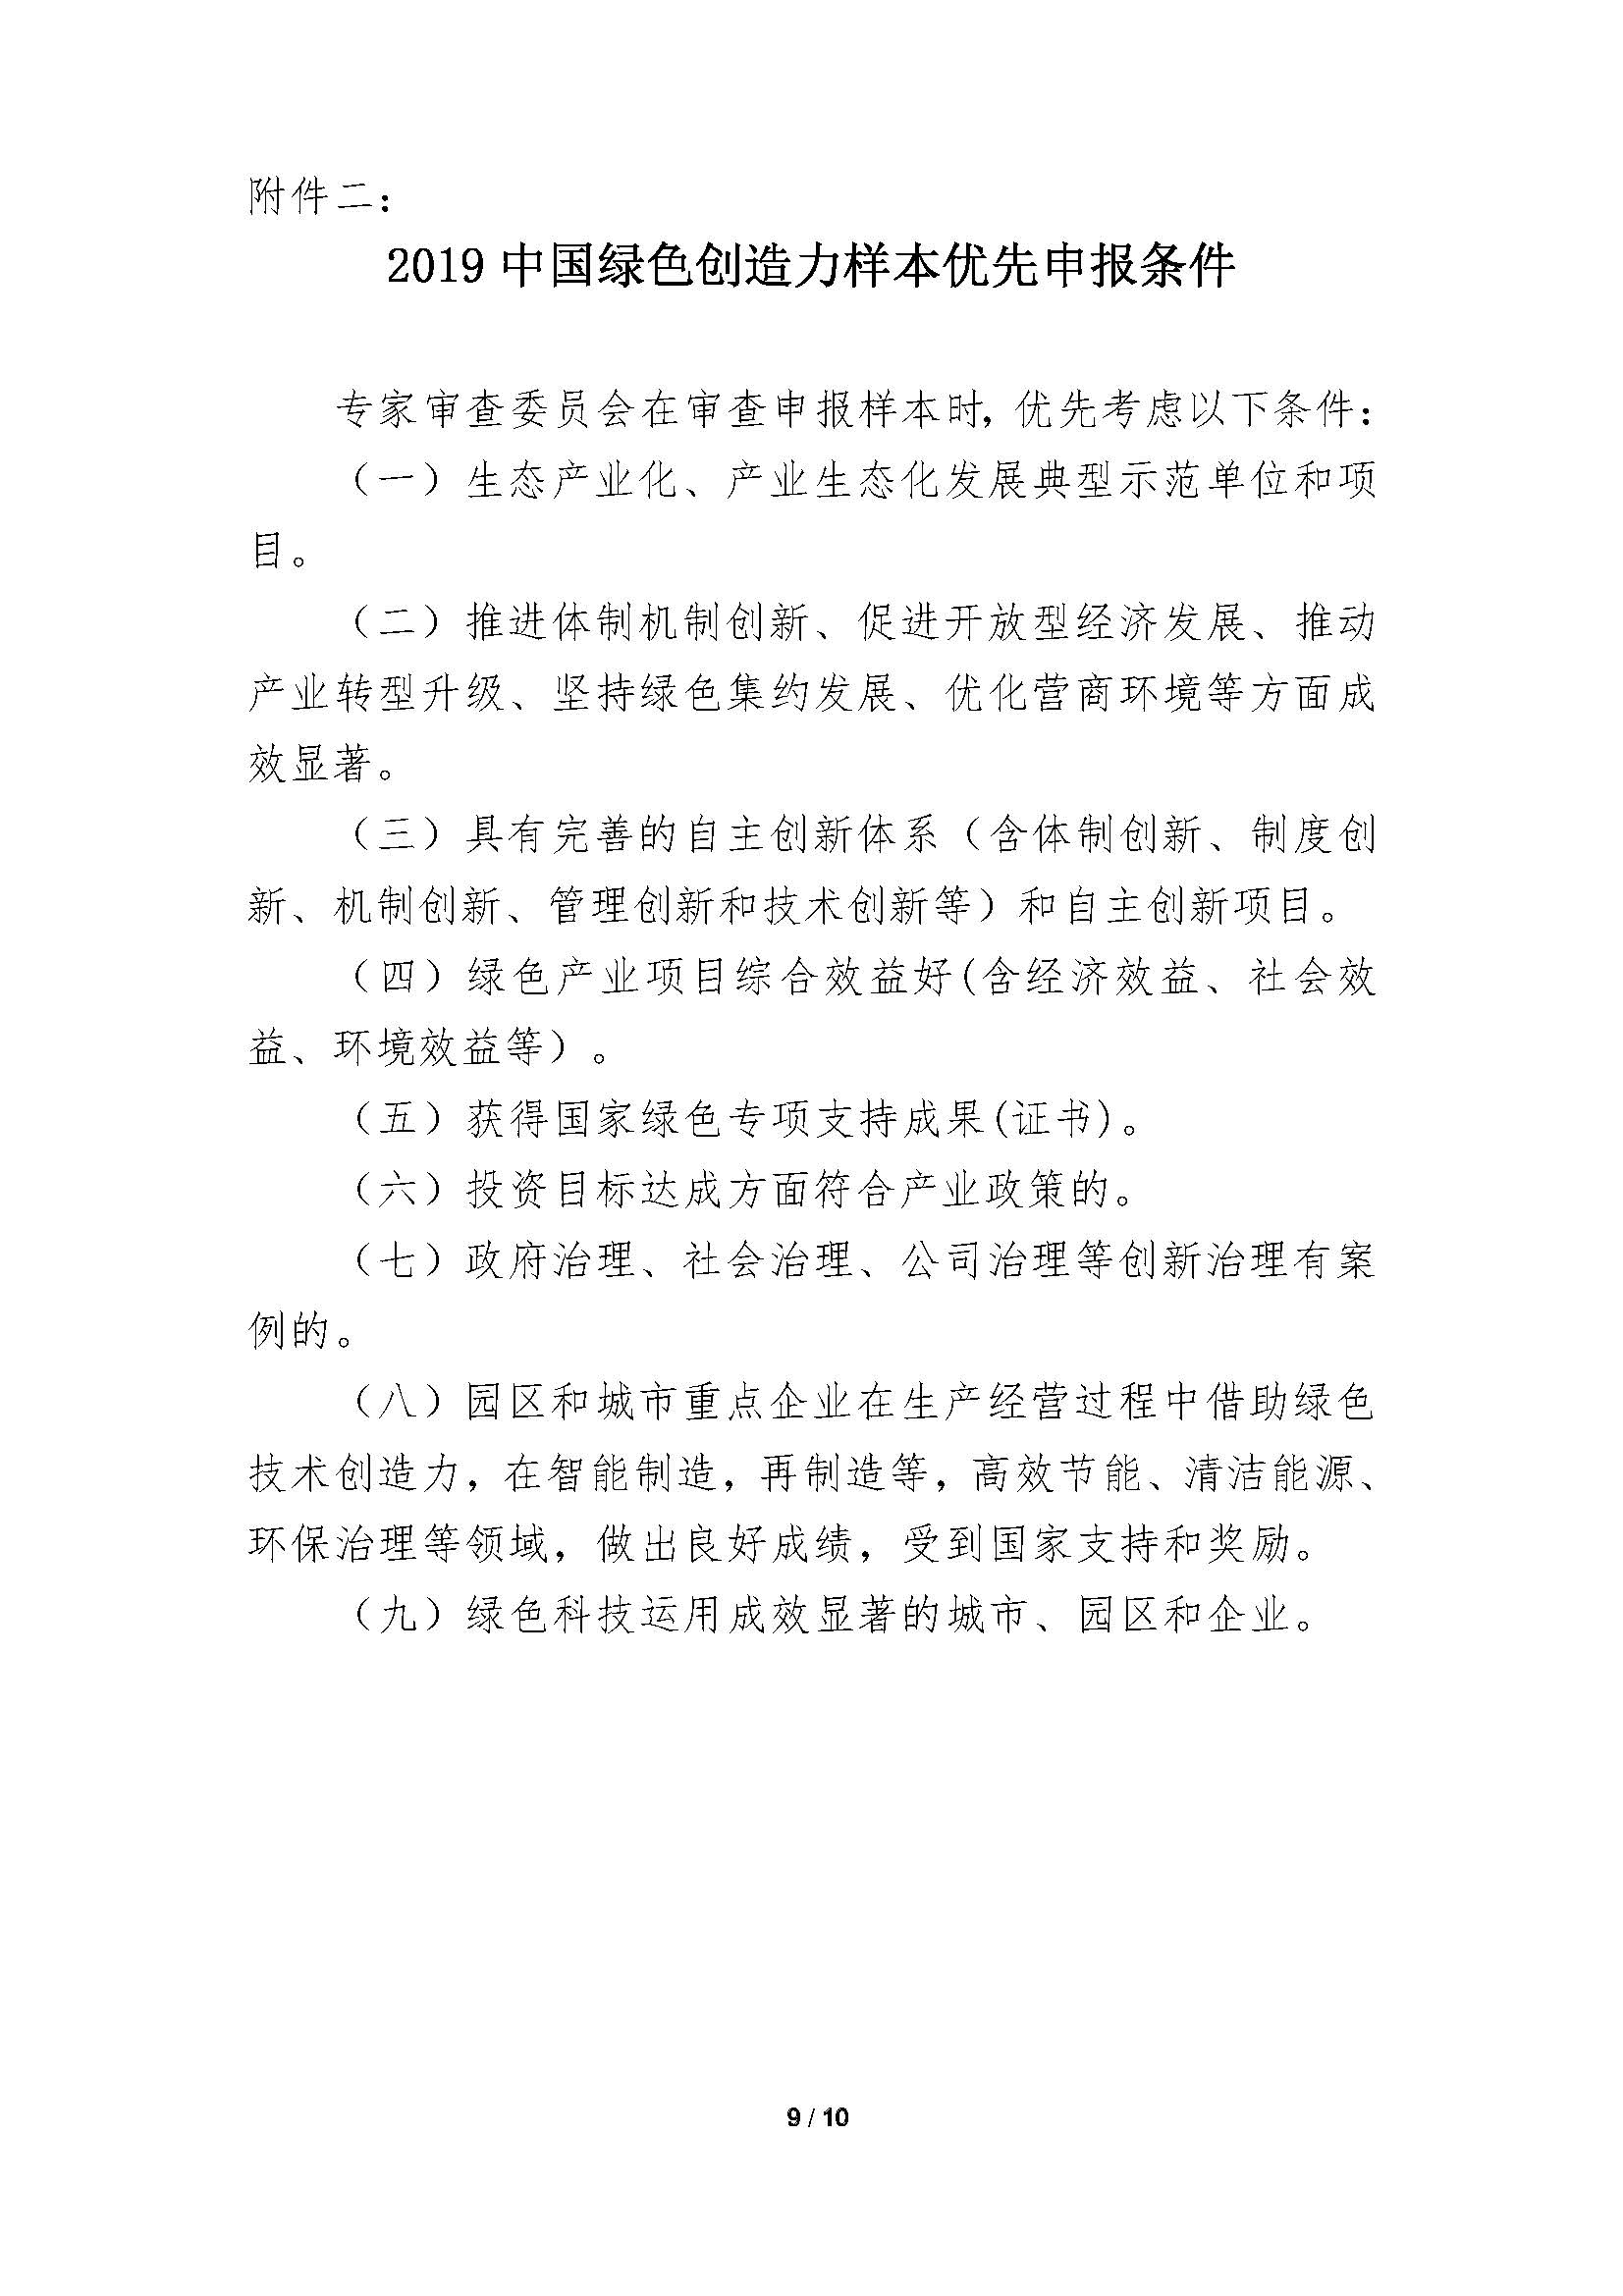 中国绿色创造力样本”的通知_页面_09.jpg